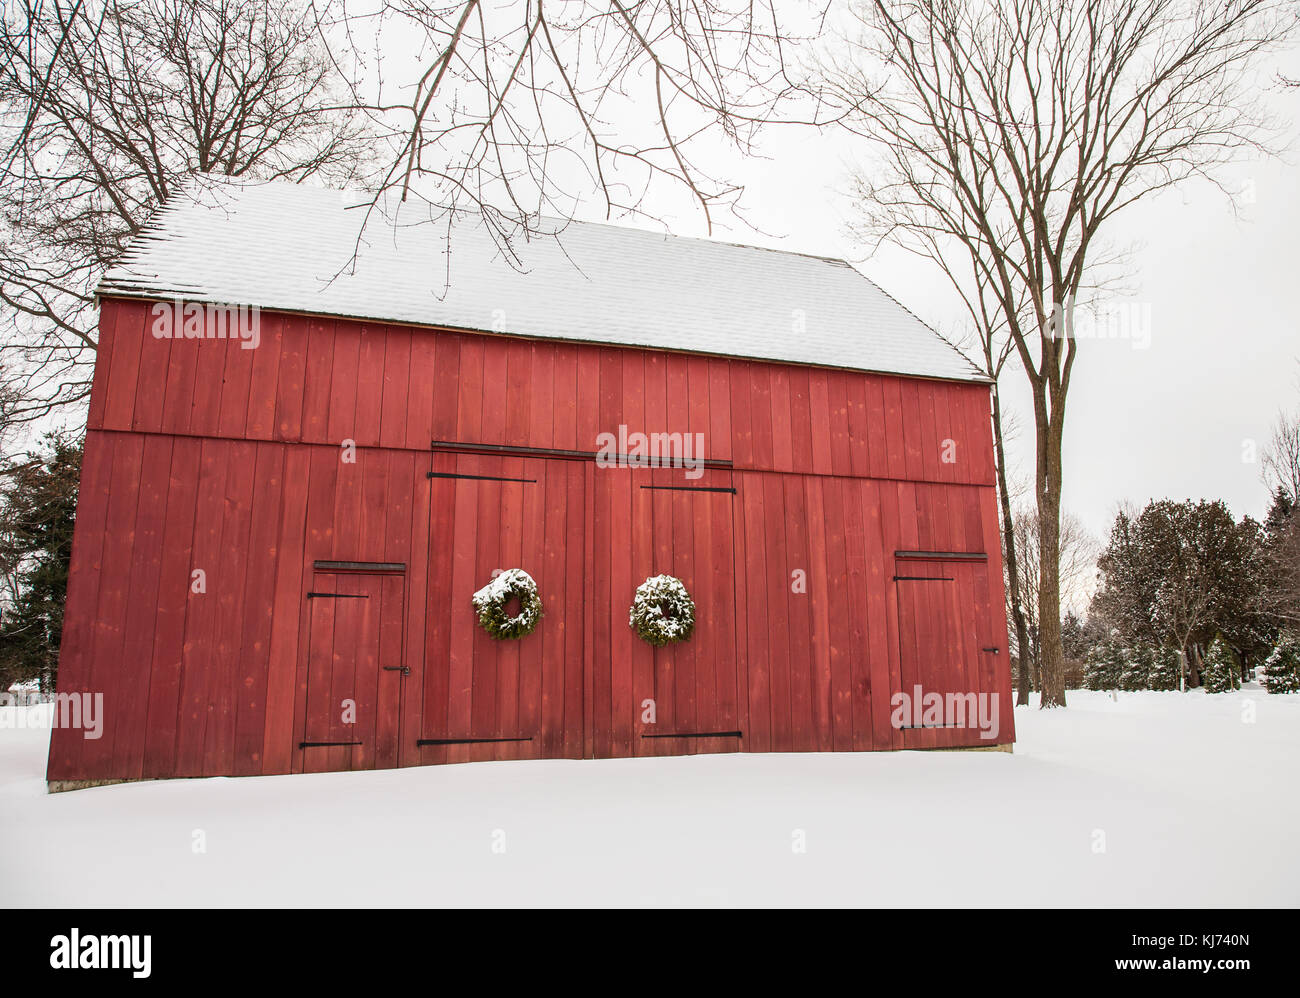 Historische rote amerikanische Scheune im Winterschnee, Cranbury, New Jersey, USA, USA, US, Winter Landschaft Bild vintage Weihnachten Schnee Bild Bauernhof rot Stockfoto